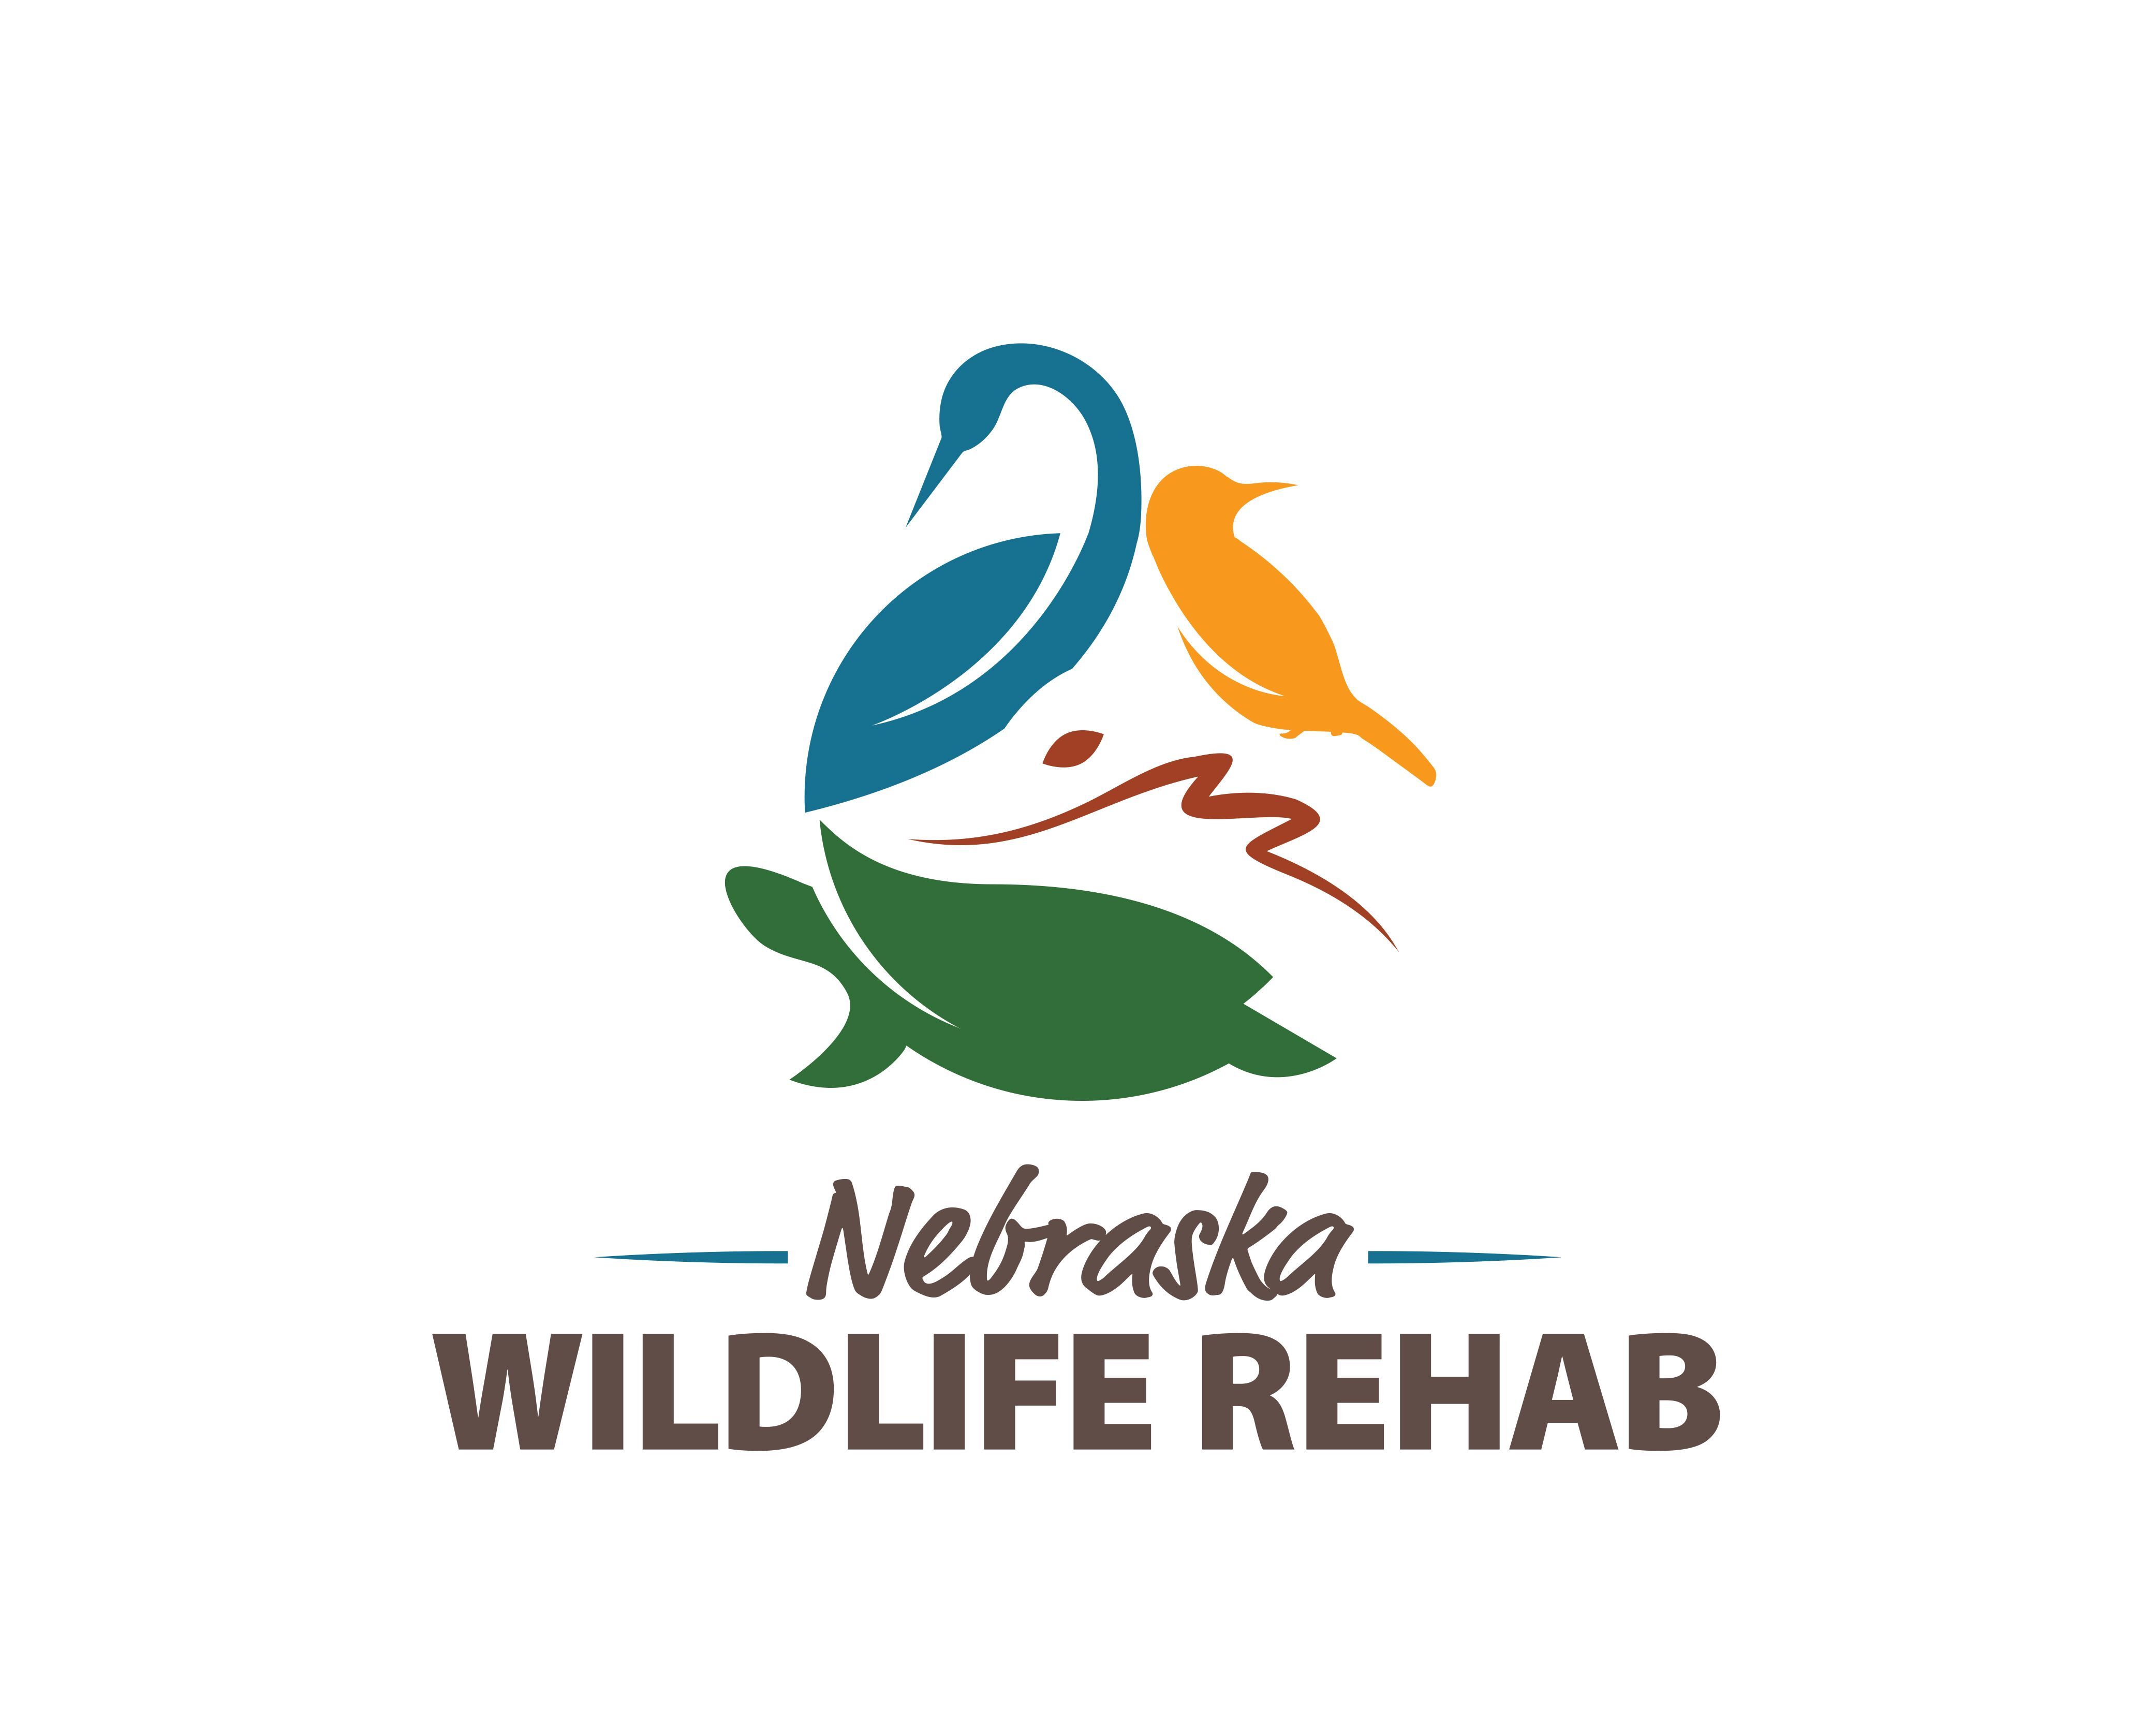 Nebraska Wildlife Rehab